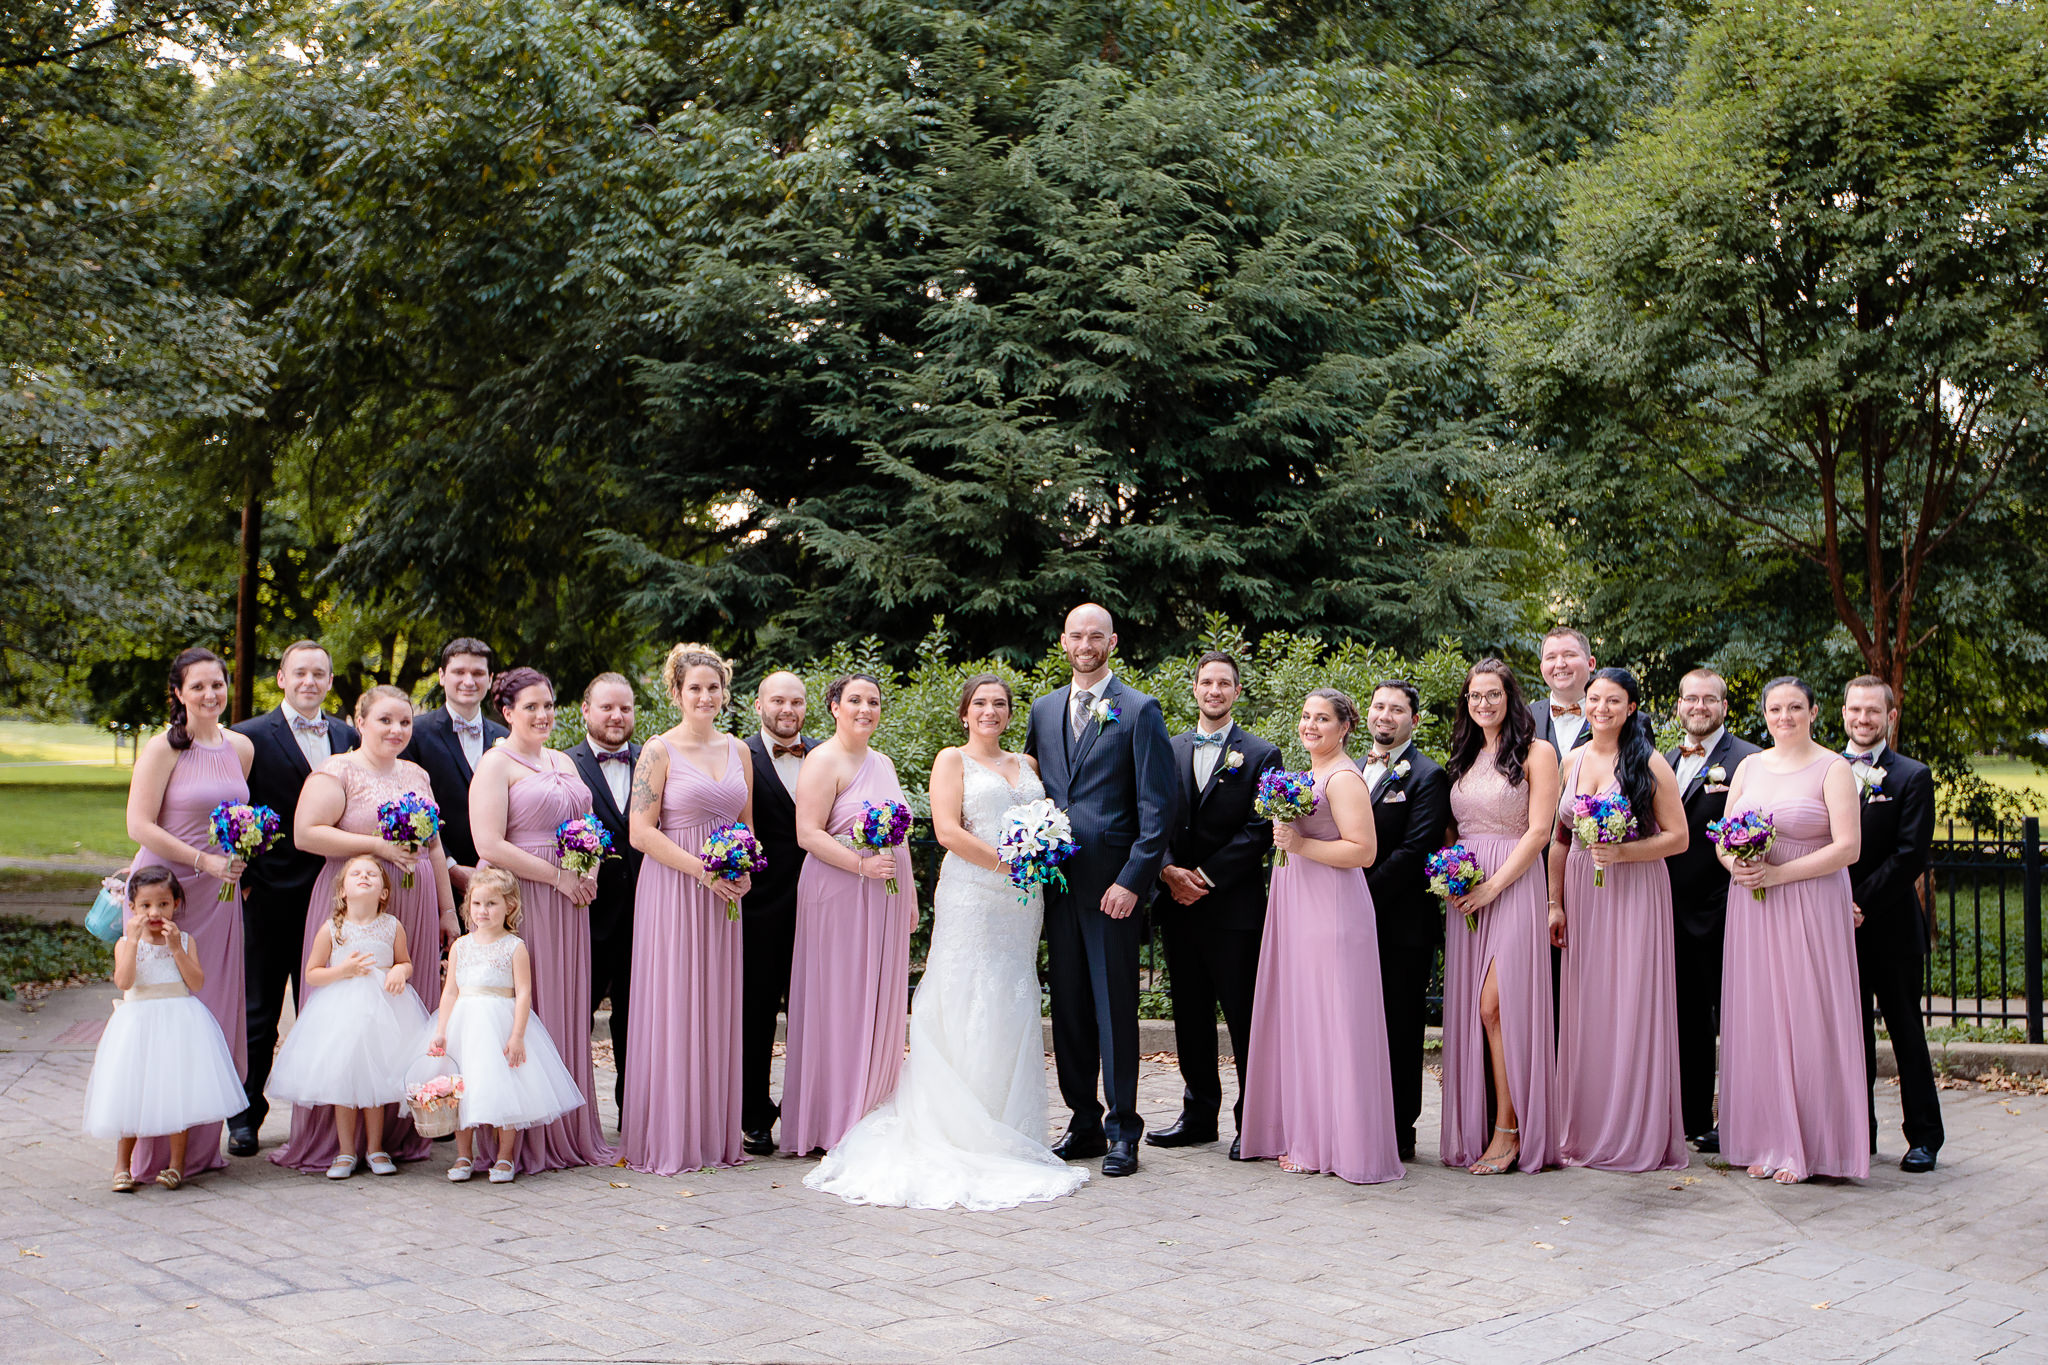 Bridal party poses at a National Aviary wedding